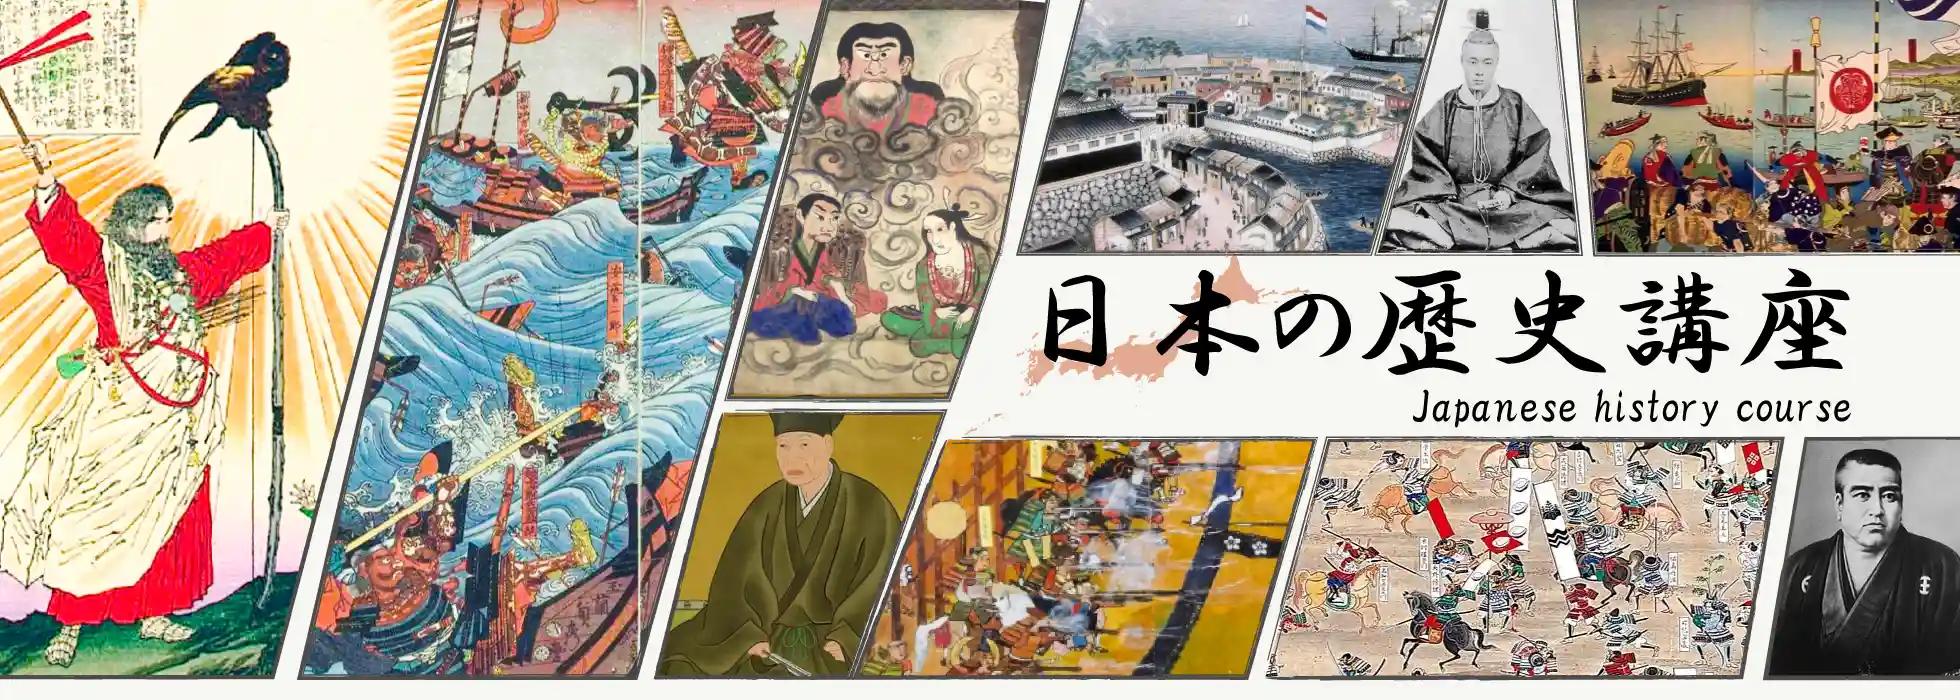 在線日本歷史課程